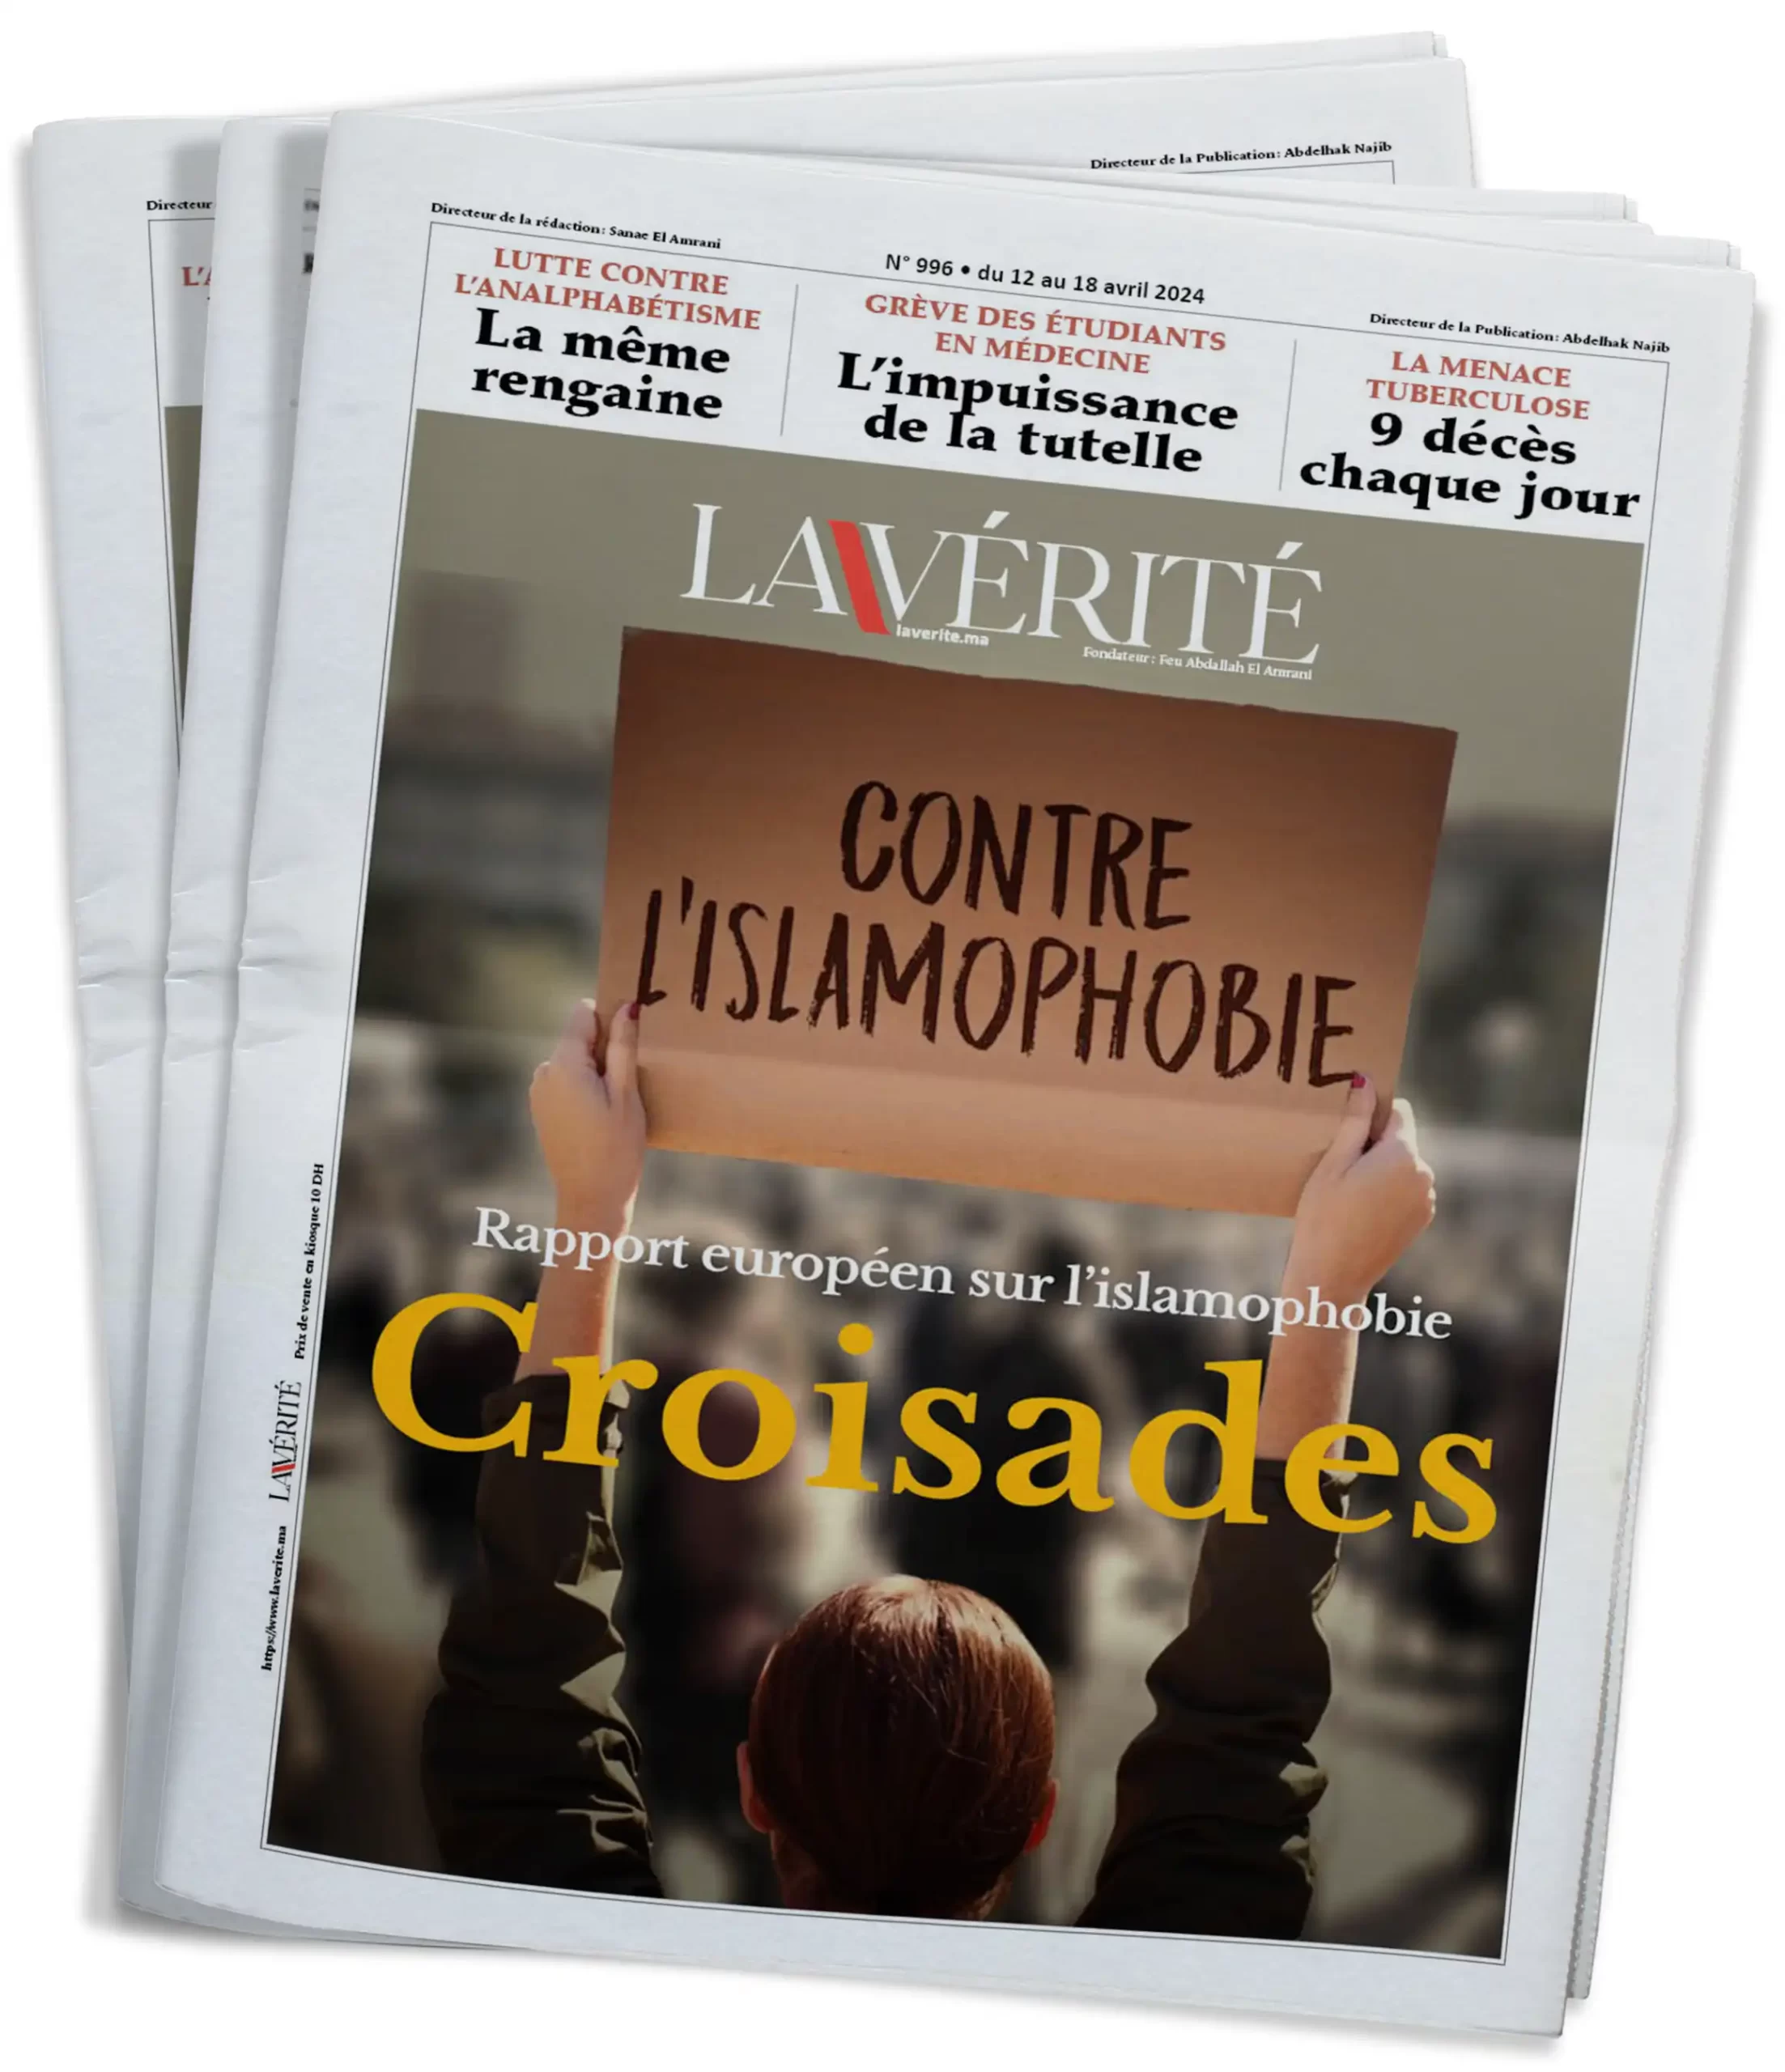 Rapport européen sur l’islamophobie : Croisades